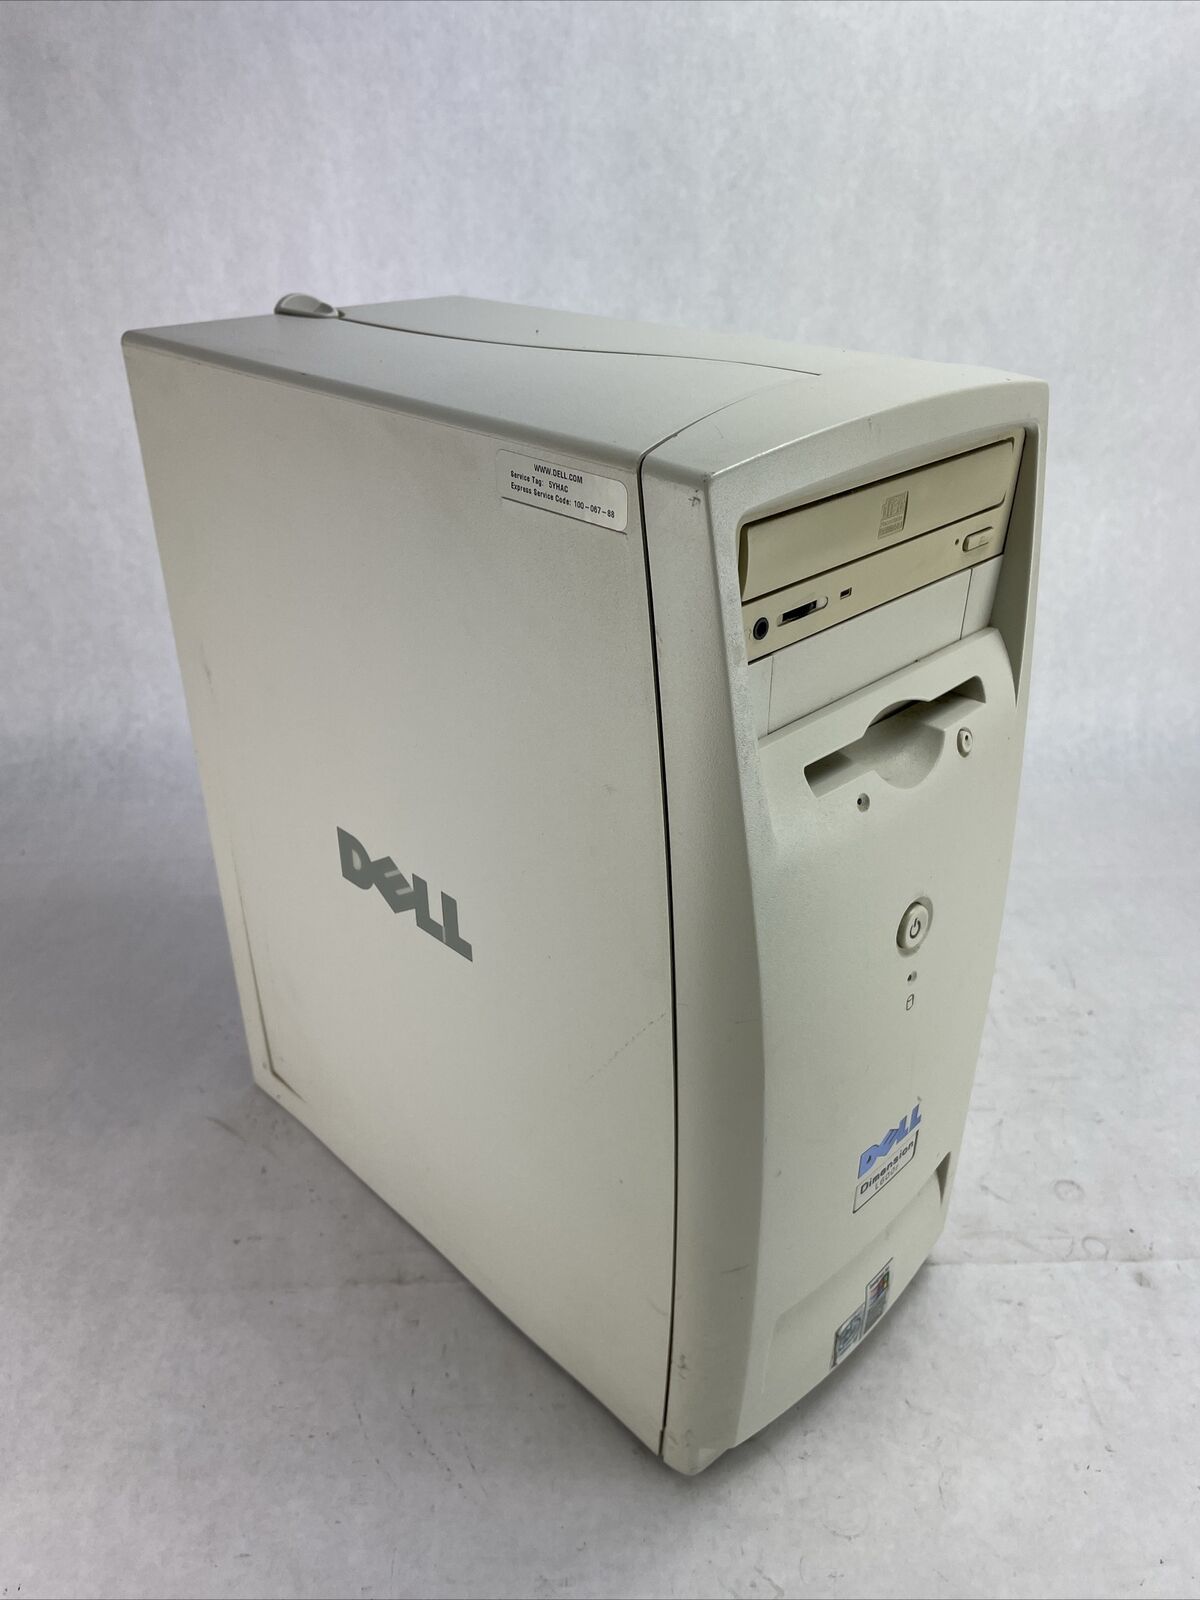 Dell Dimension L600r MT Intel Pentium III 600MHz 128MB RAM No HDD No OS